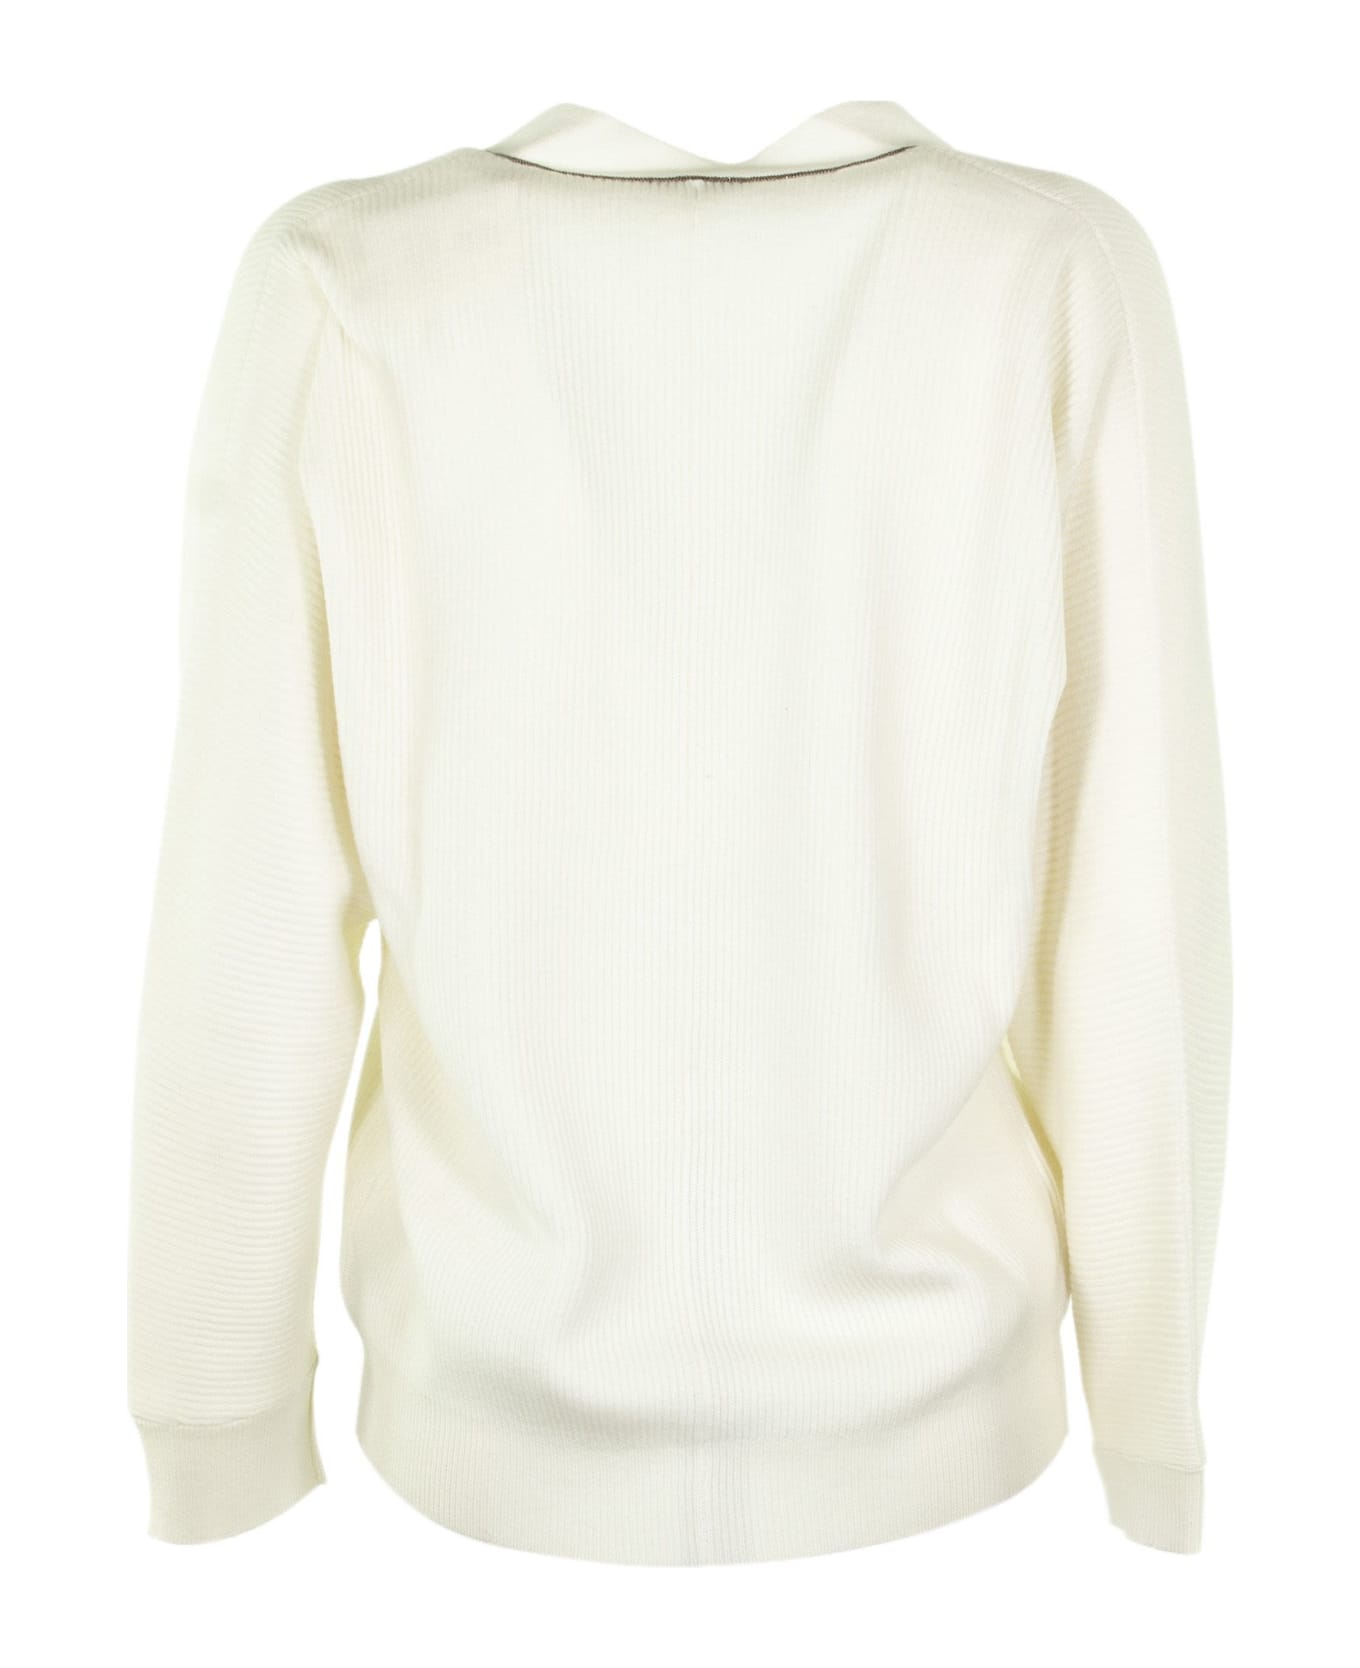 Brunello Cucinelli White V-neck Sweater Cashmere Sweater With Monili - White カーディガン